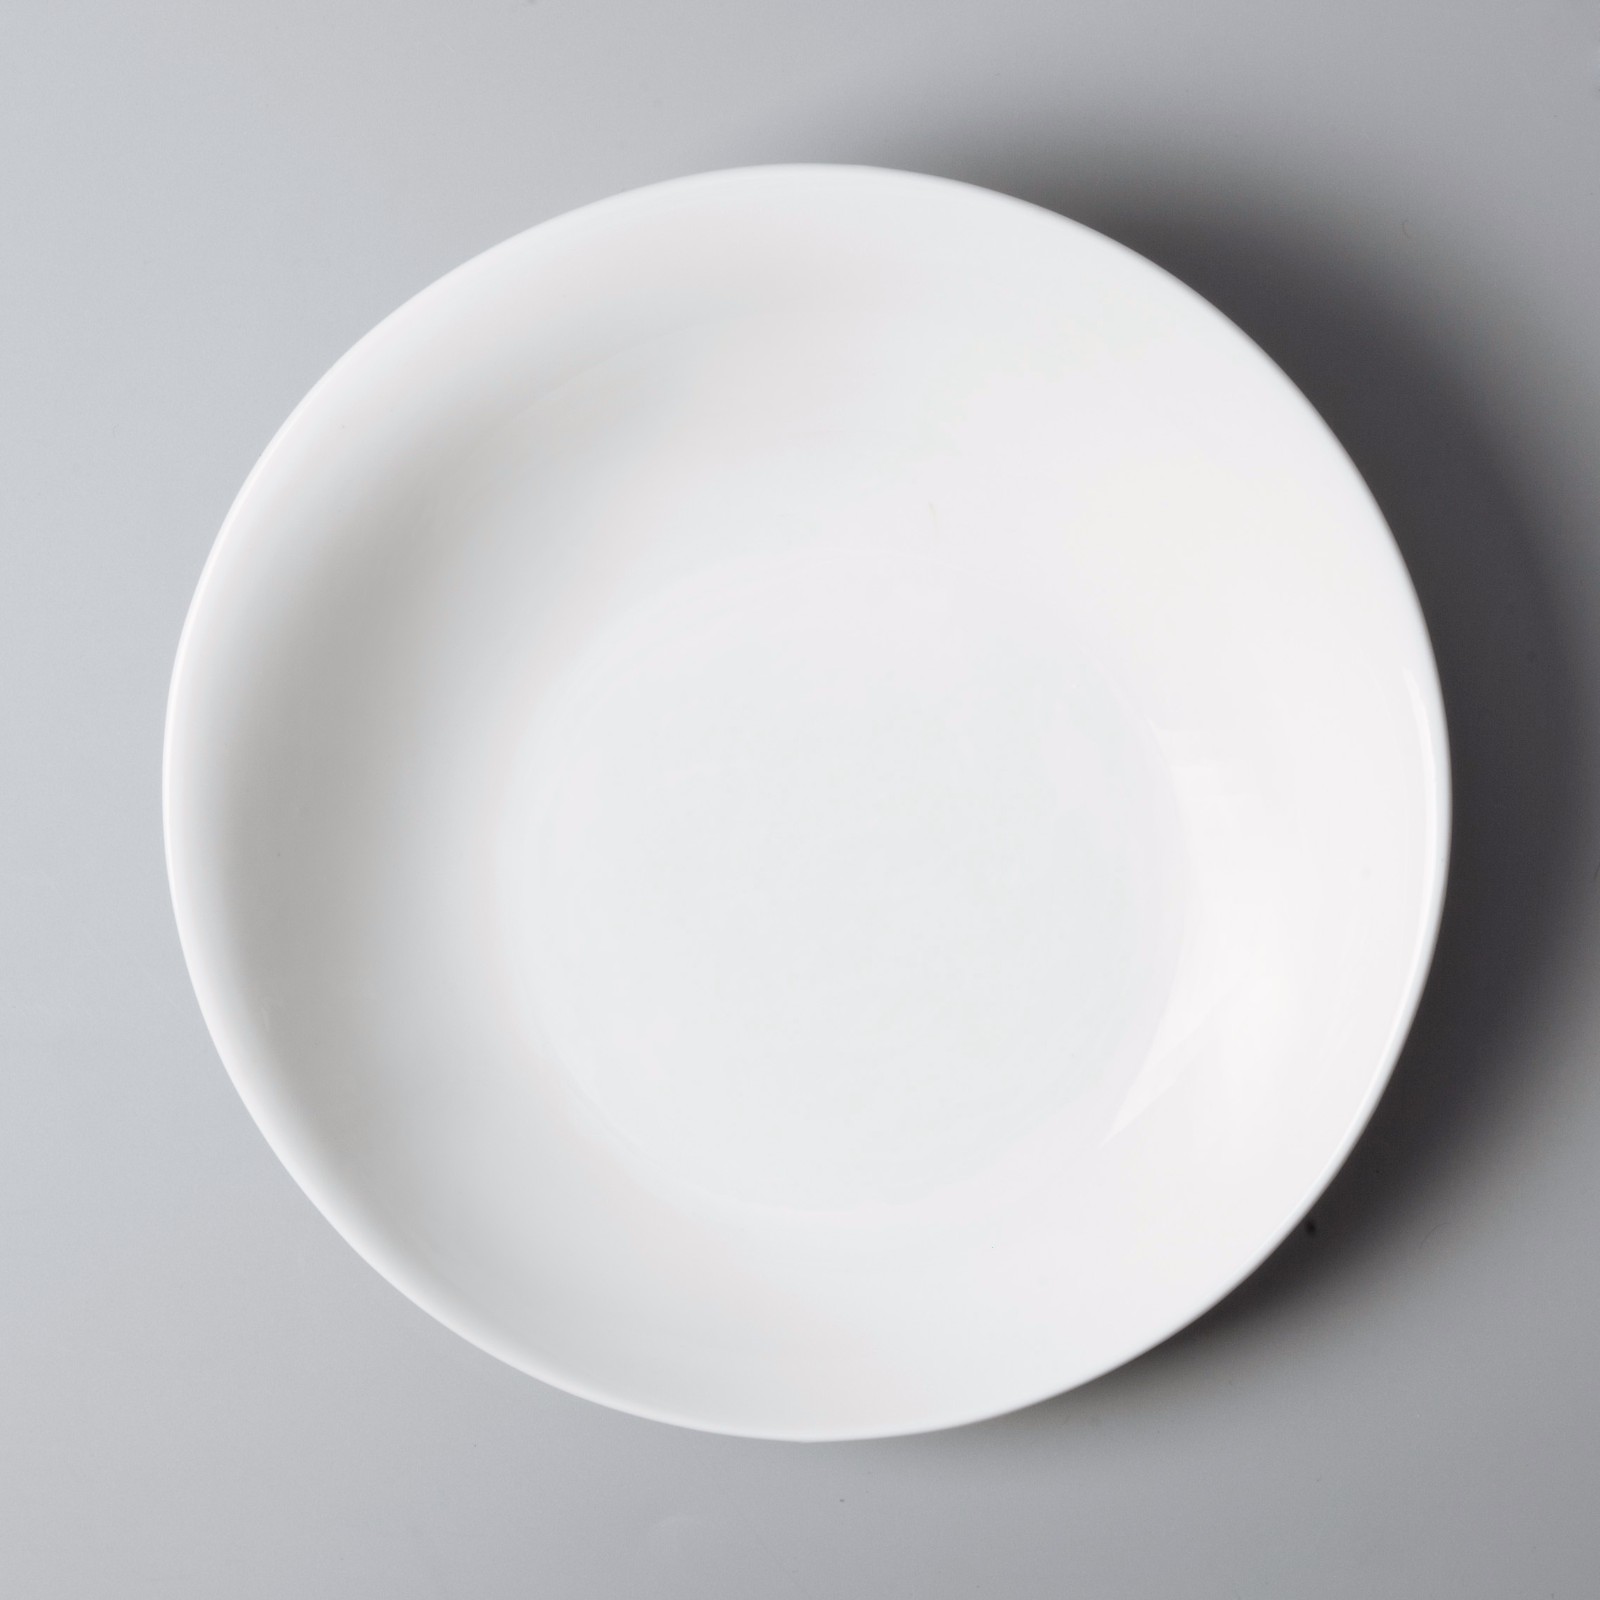 elegant commercial restaurant plates manufacturer for bistro-4